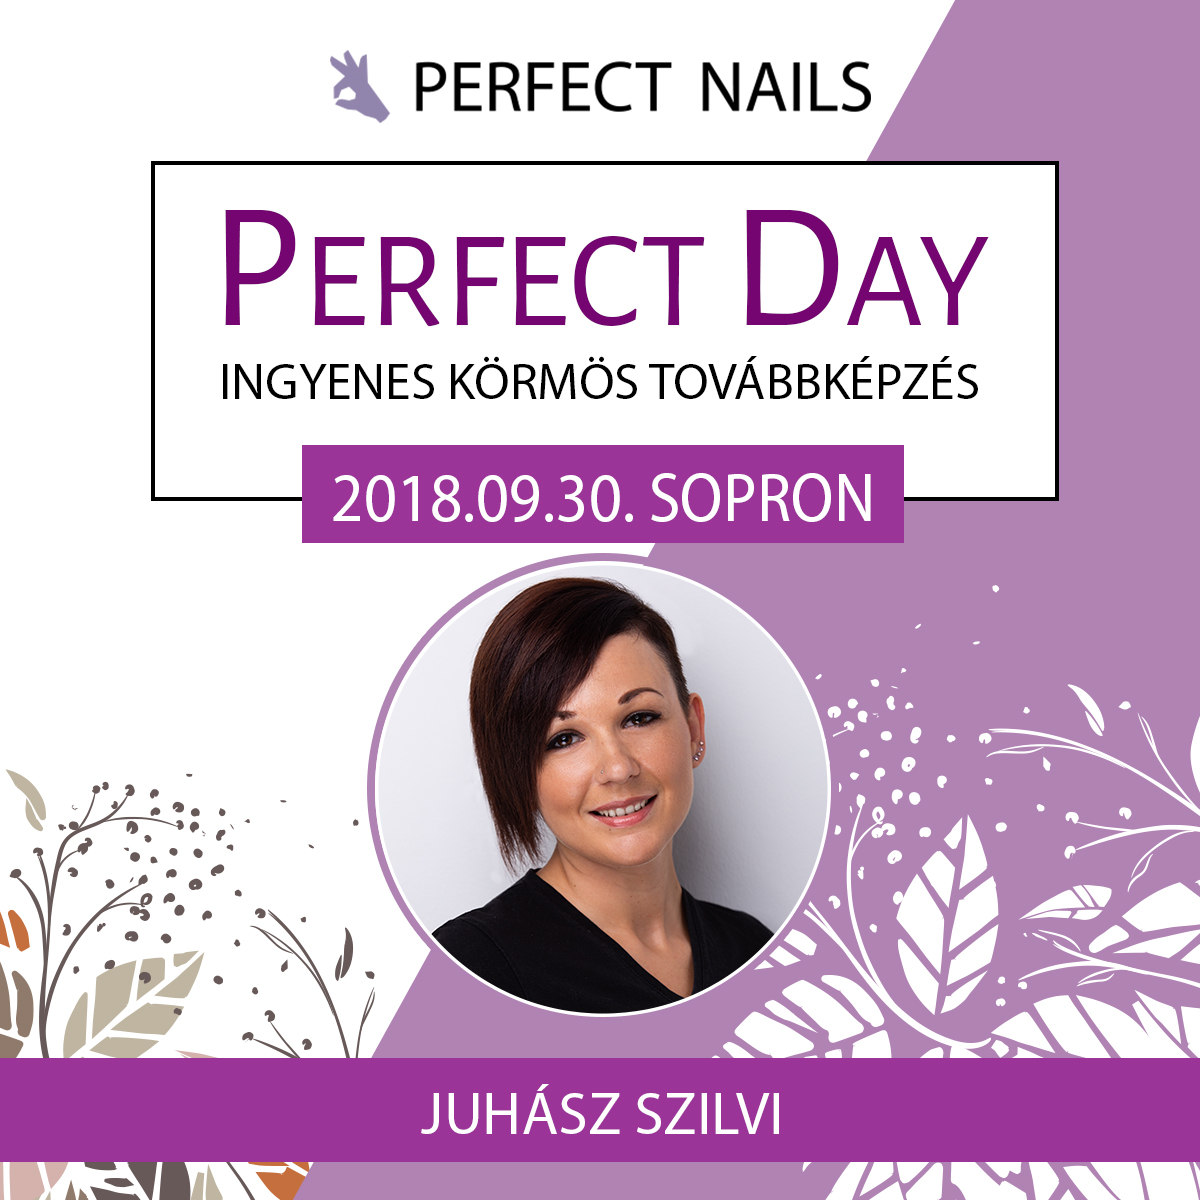 Ingyenes körmös továbbképzés – Perfect Day – Sopron- 2018.09.30.